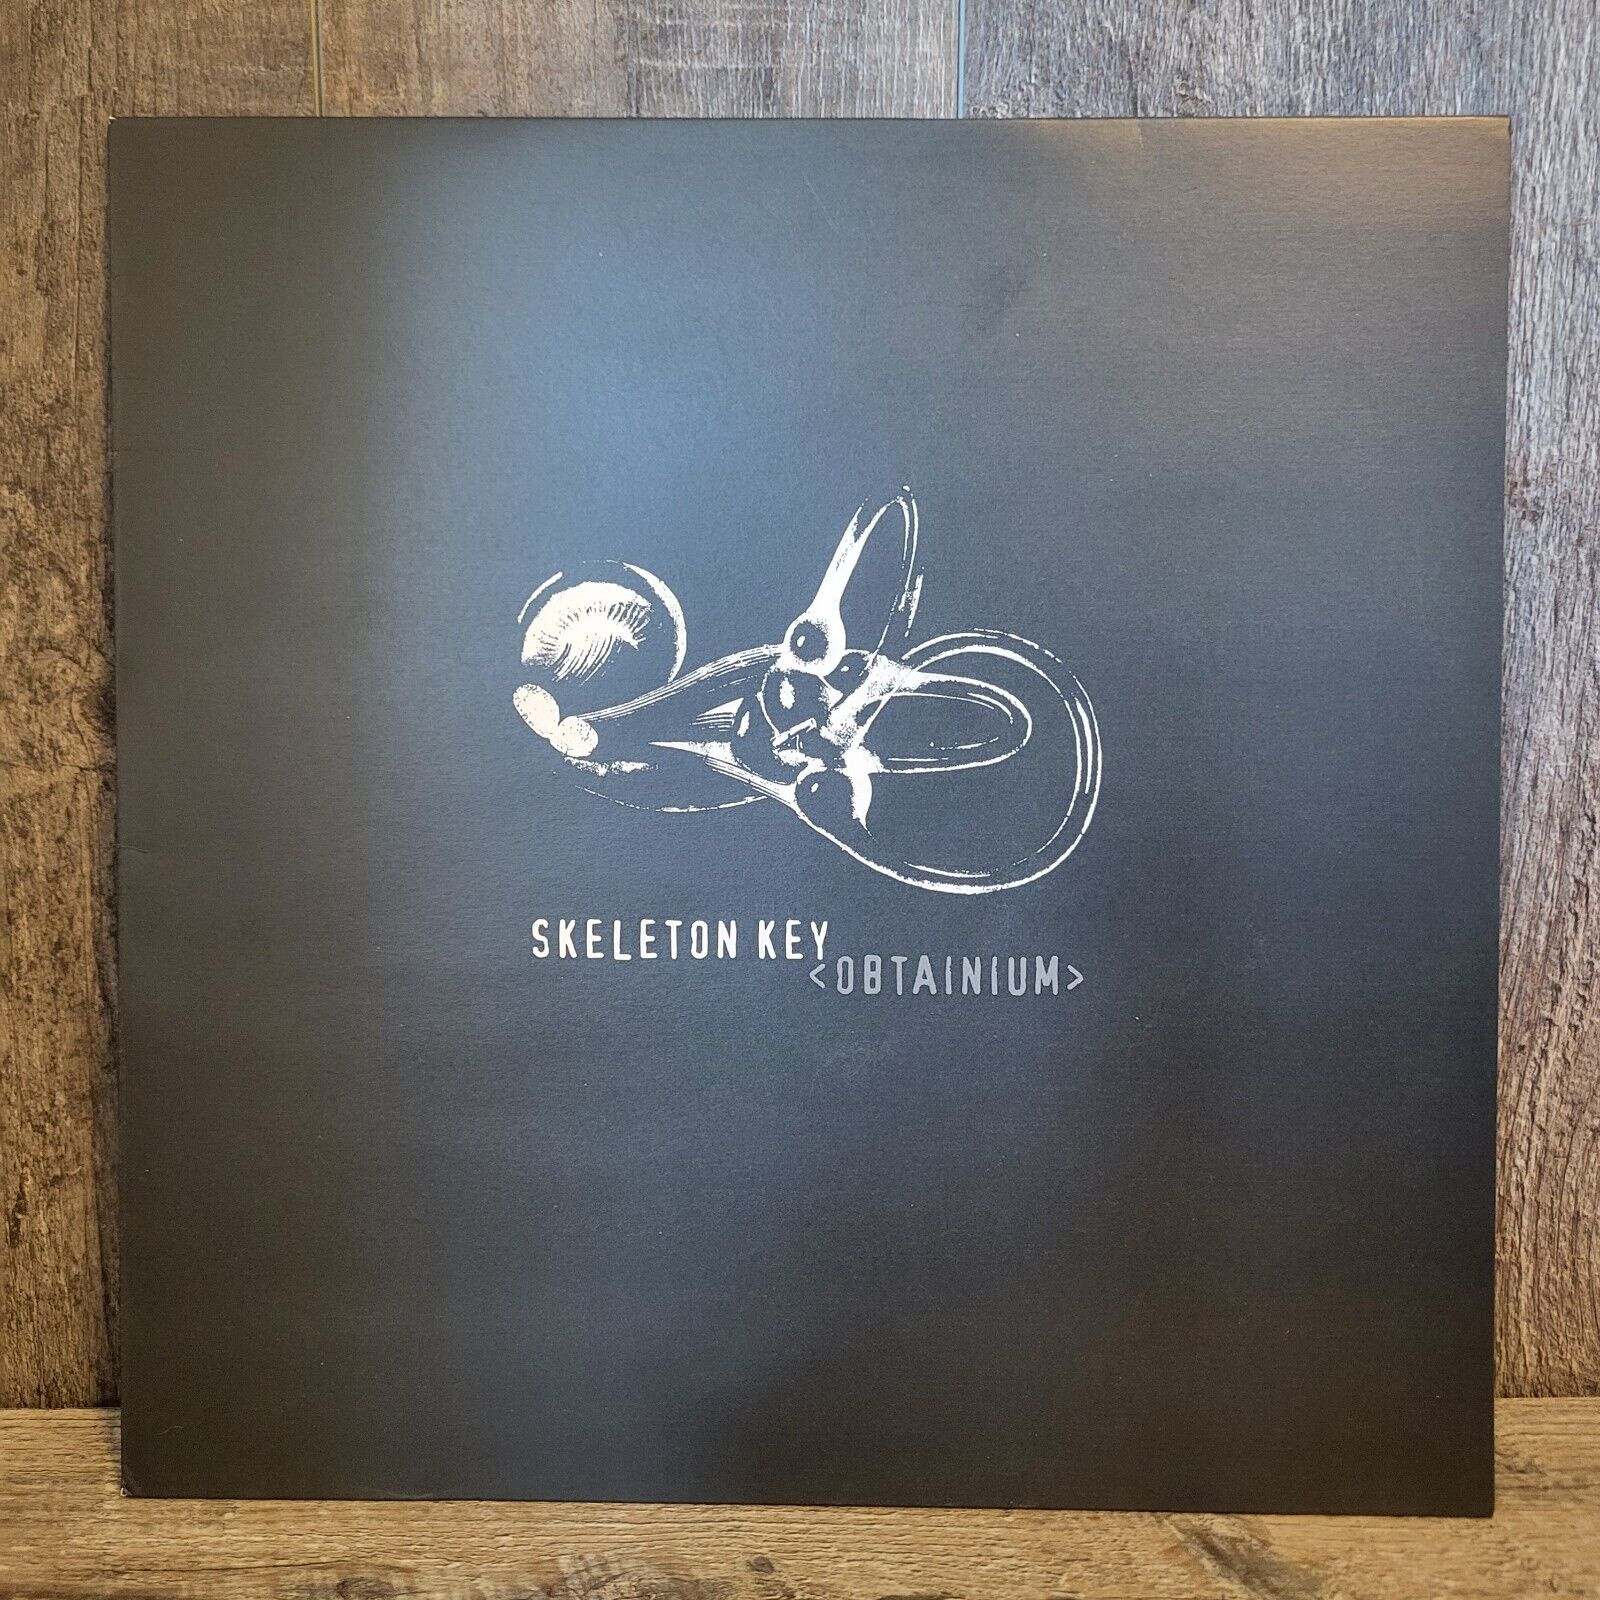 Skeleton Key Obtainium LP Album Artic Rodeo Record Rare OOP Limited Blue Vinyl 